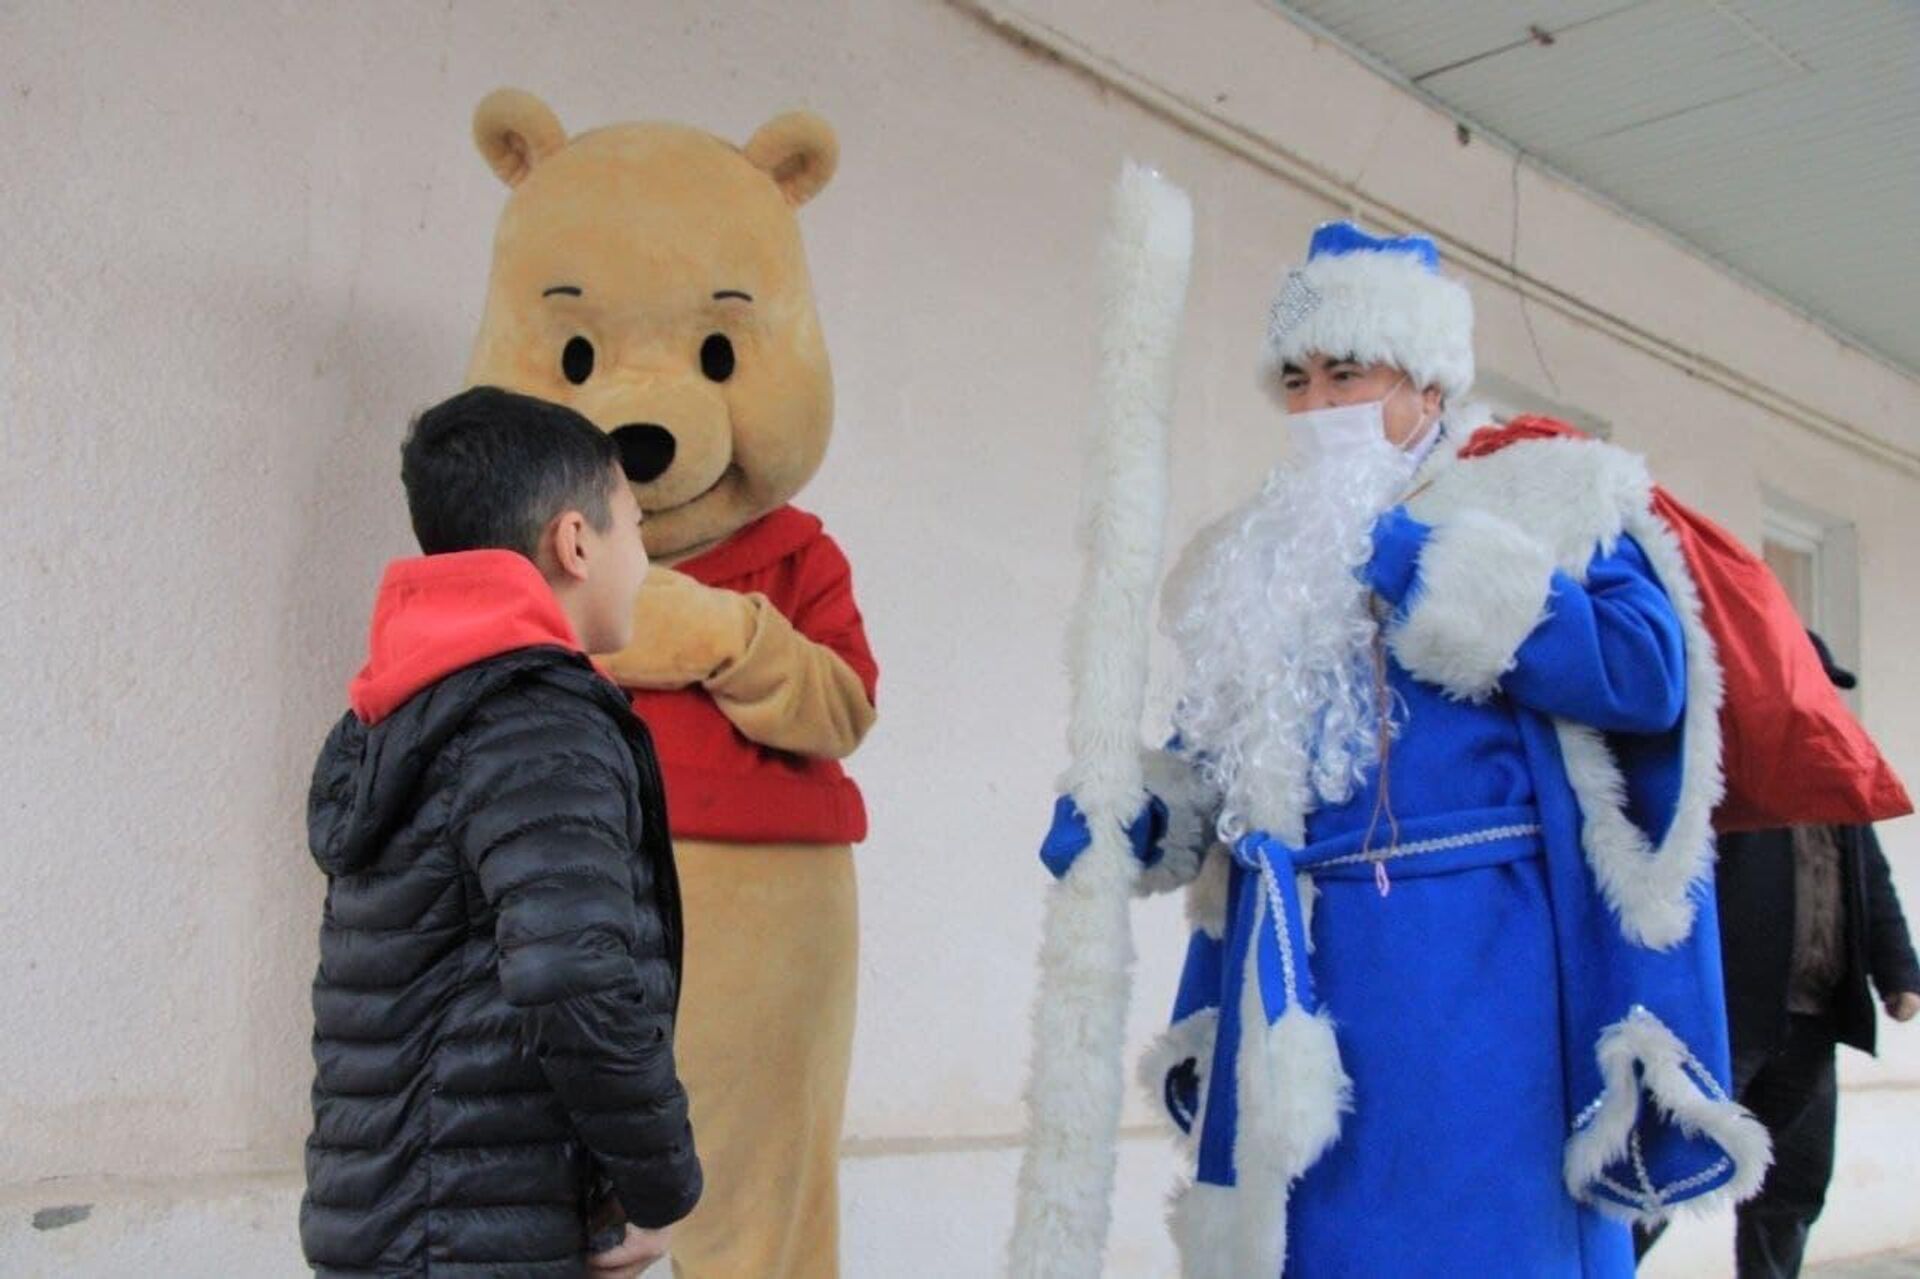 Хоким Сырдарьинской области Гафур Мирзаев навестил детей в костюме Деда Мороза - Sputnik Узбекистан, 1920, 27.12.2021